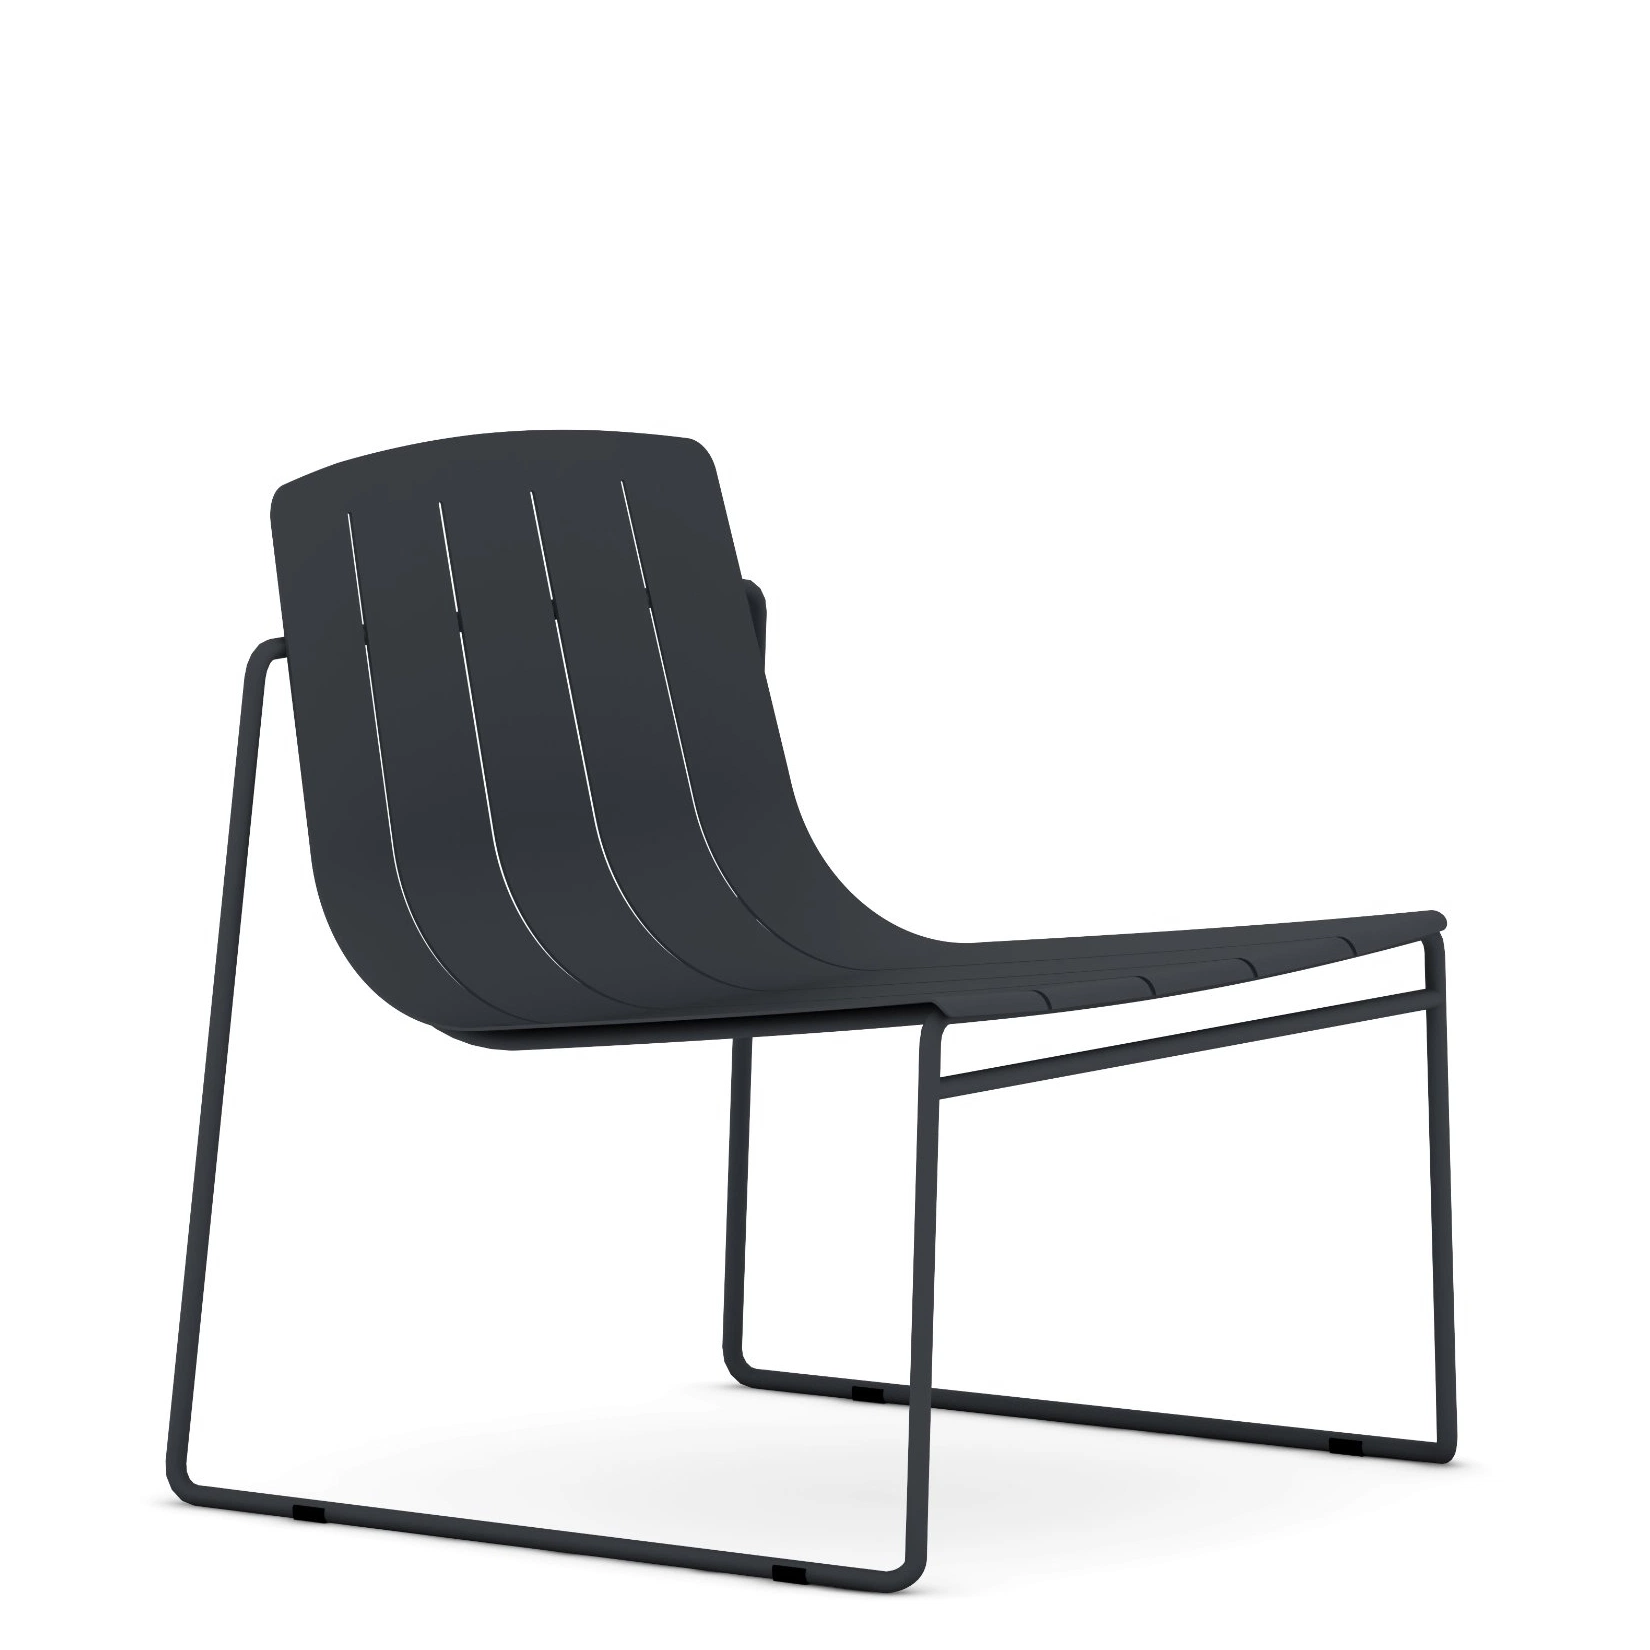 Sunlink Dasia Aluminium Chaise longue de jardin moderne pour la maison en plein air empilable, couleur noire.